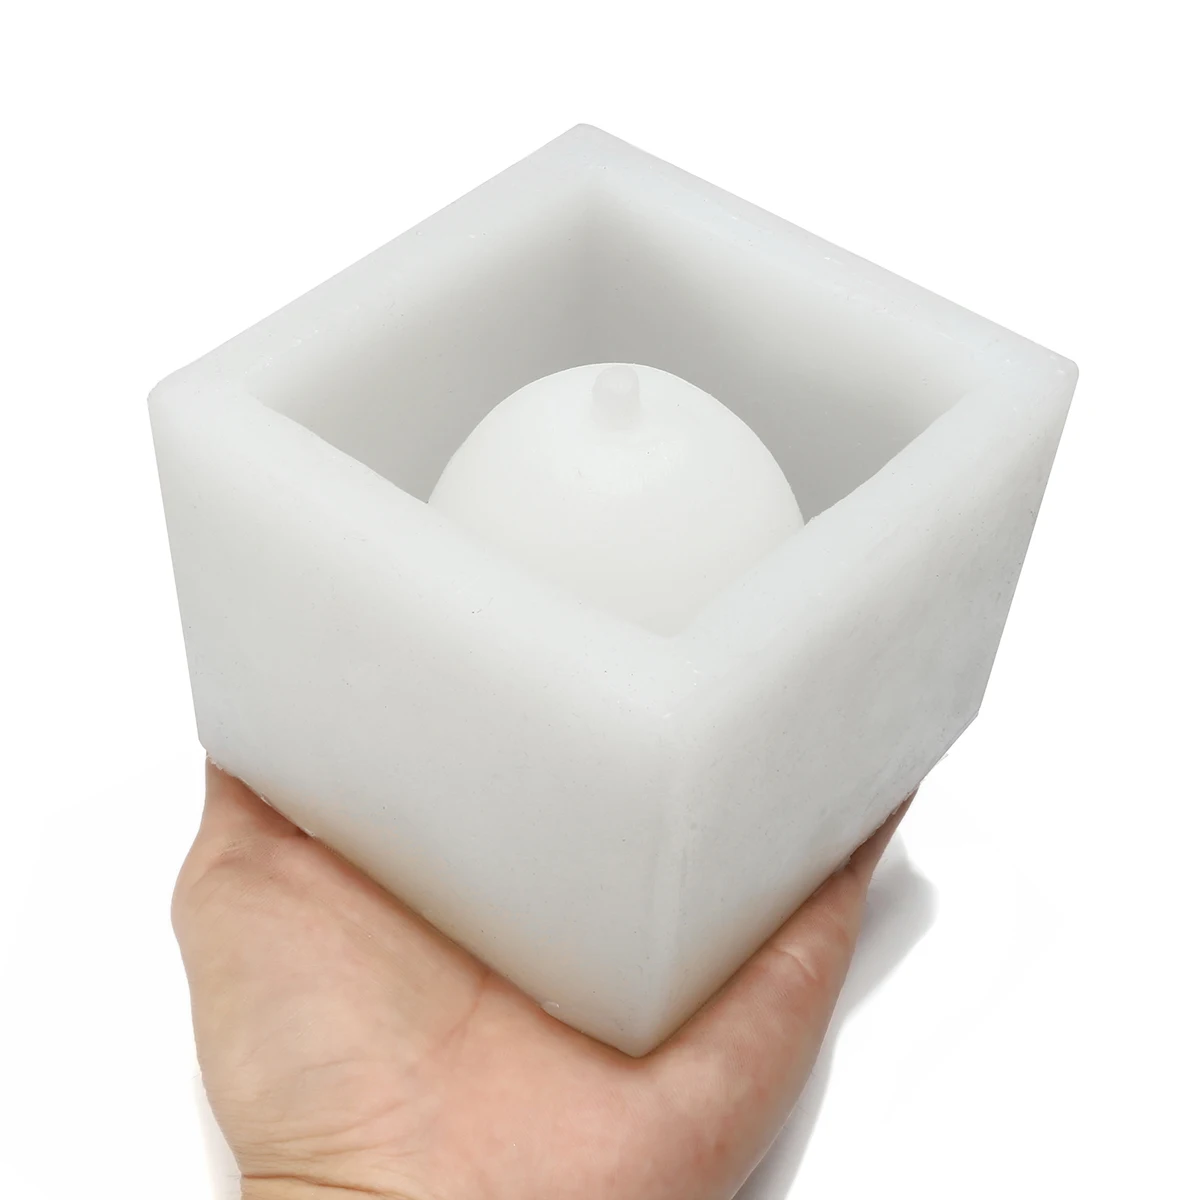 Cube конкретные цветочный горшок Силиконовые формы DIY Сад кашпо ваза плесень инструменты ремесла сочные бонсай Desktop граден украшения